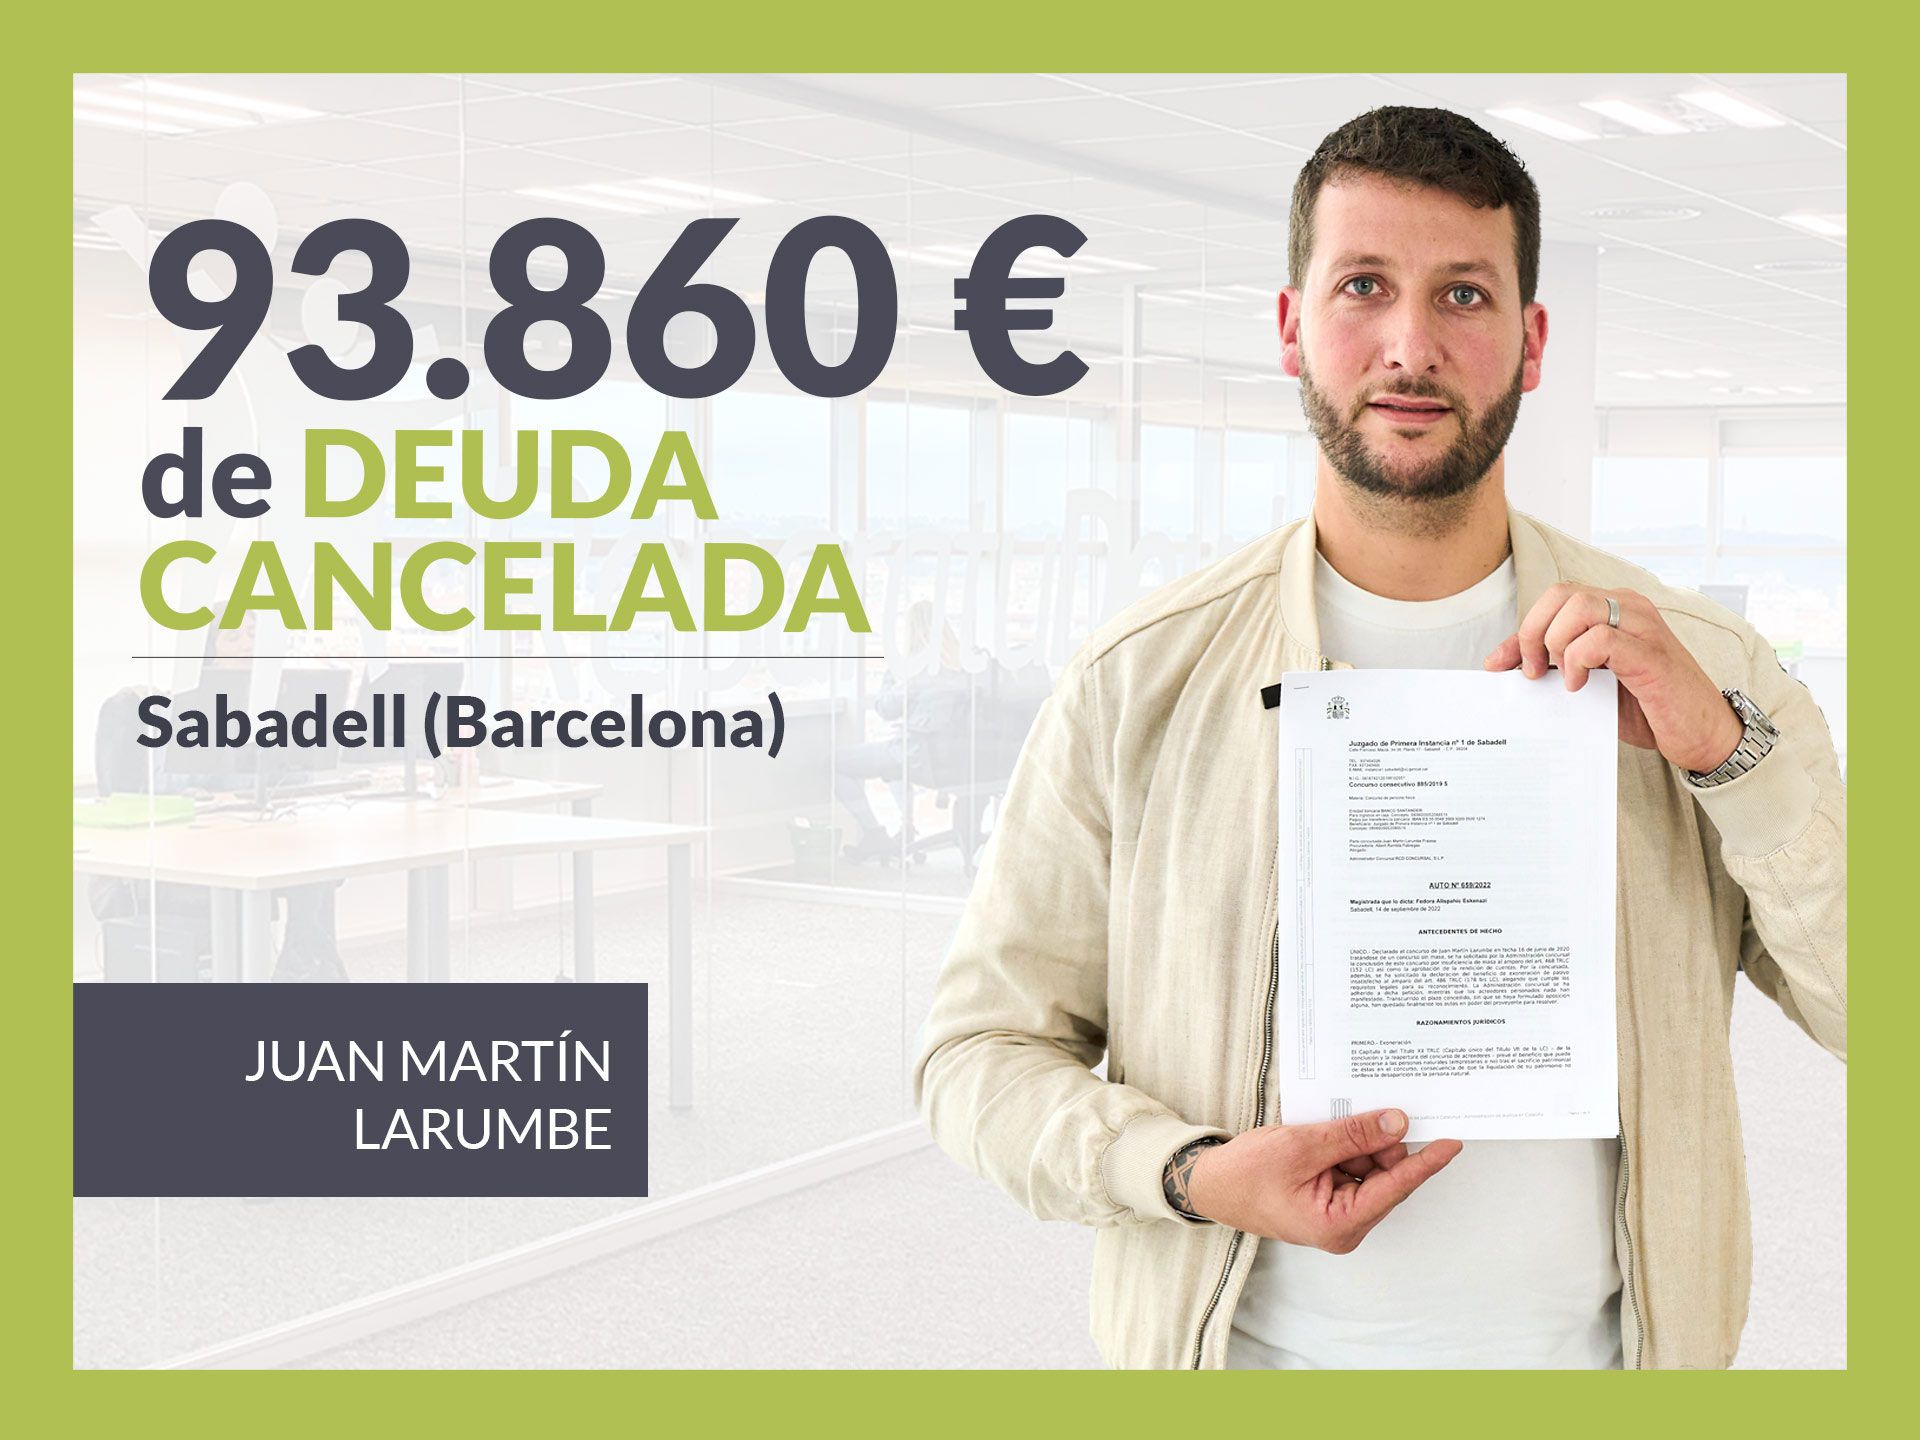 Repara tu Deuda Abogados cancela 93.860? en Sabadell (Barcelona) con la Ley de Segunda Oportunidad